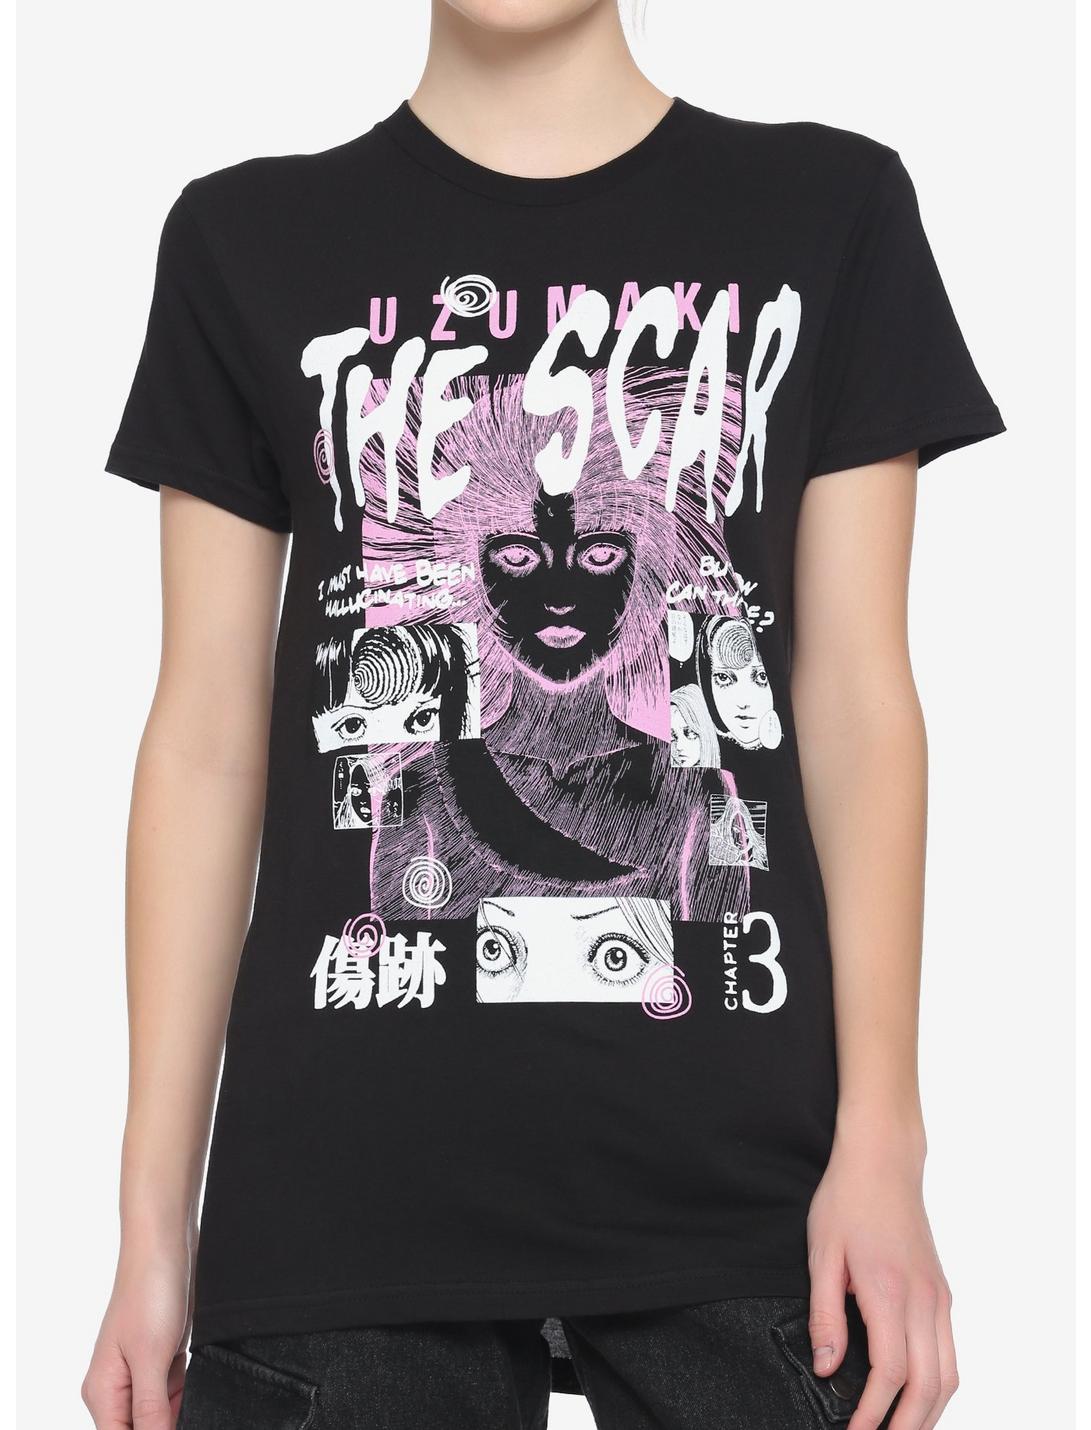 Junji Ito Uzumaki The Scar Girls T-Shirt, MULTI, hi-res